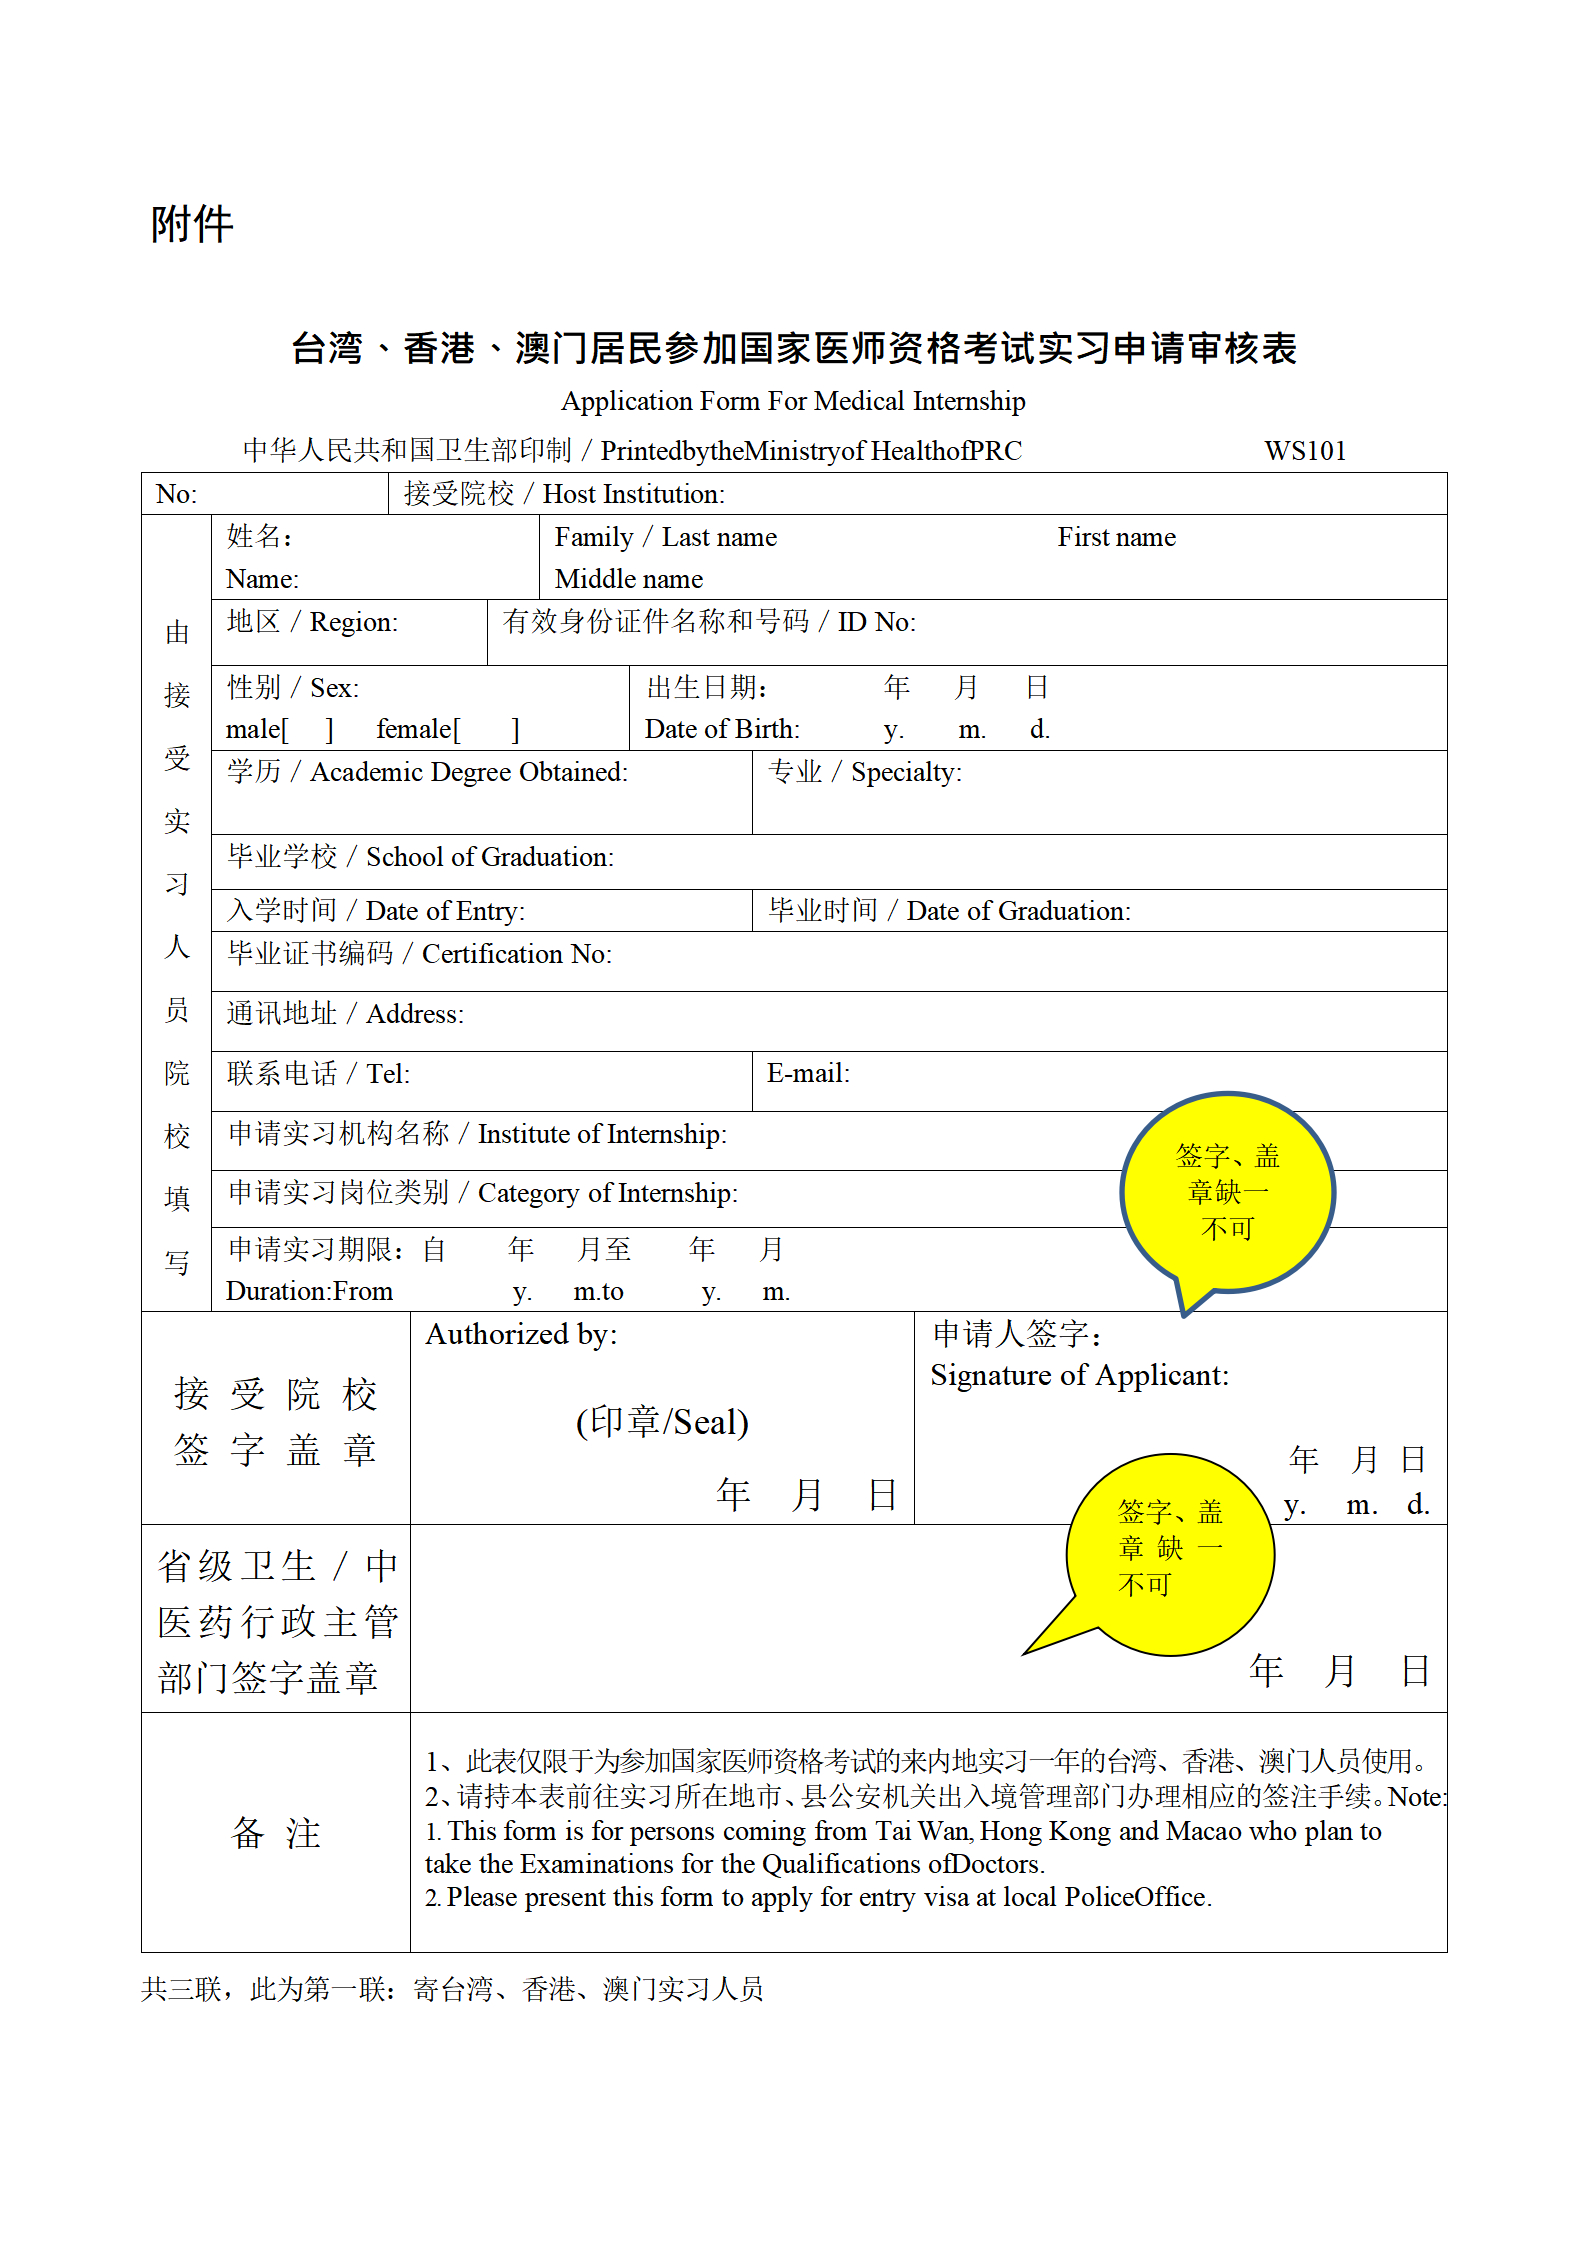 台湾、香港、澳门居民参加国家医师资格考试实习申请审核表填写说明_01